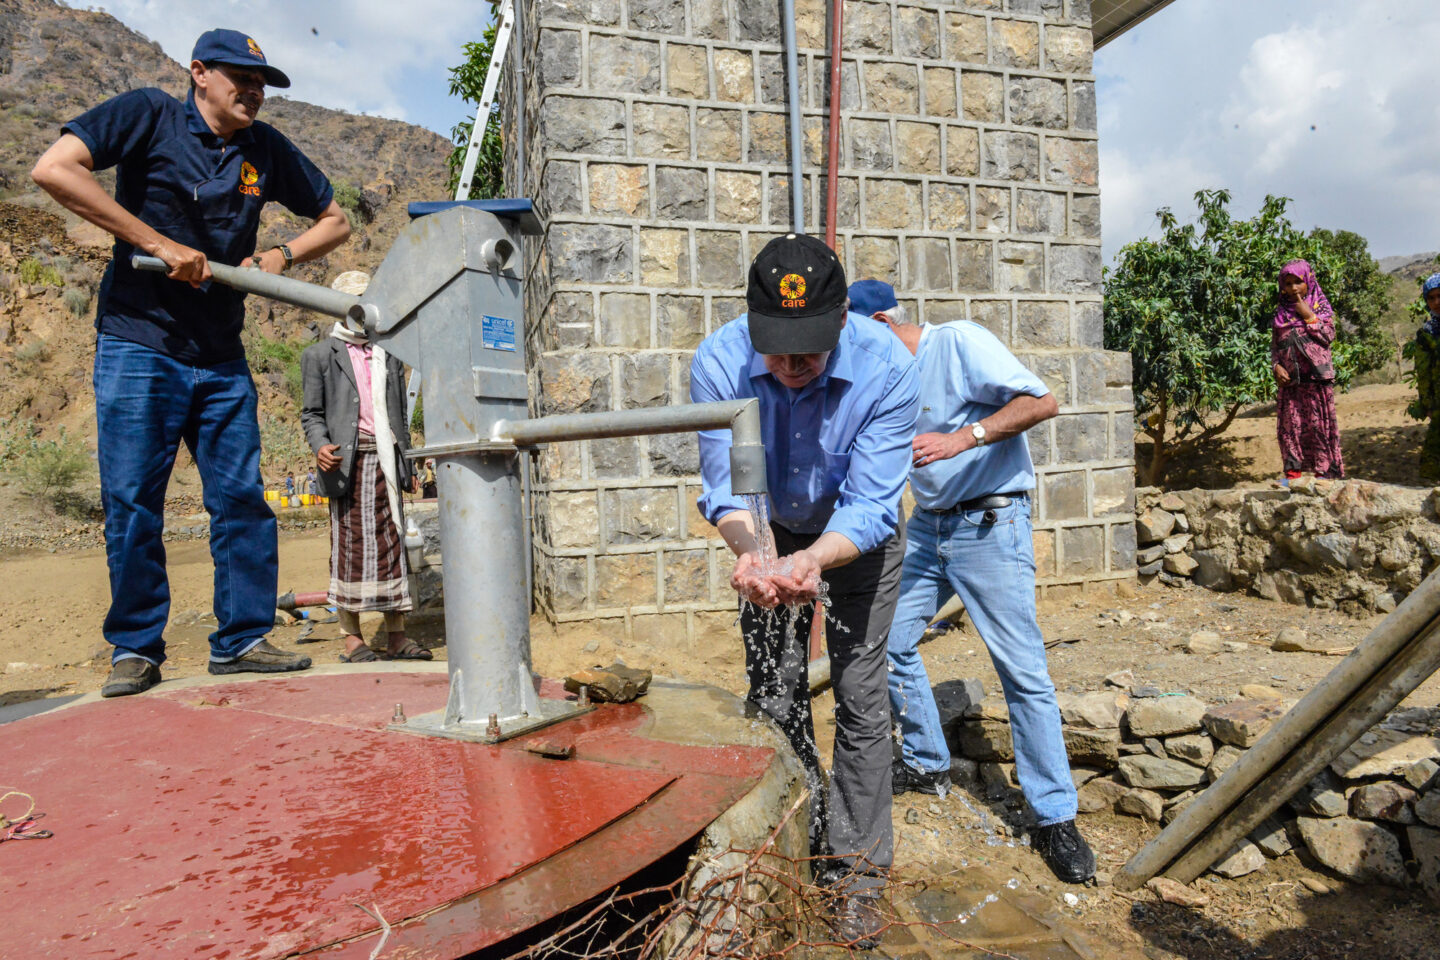 Les équipes de l'association CARE au Yémen entretiennent une source d'eau qu'ils ont construit dans un village au Yémen